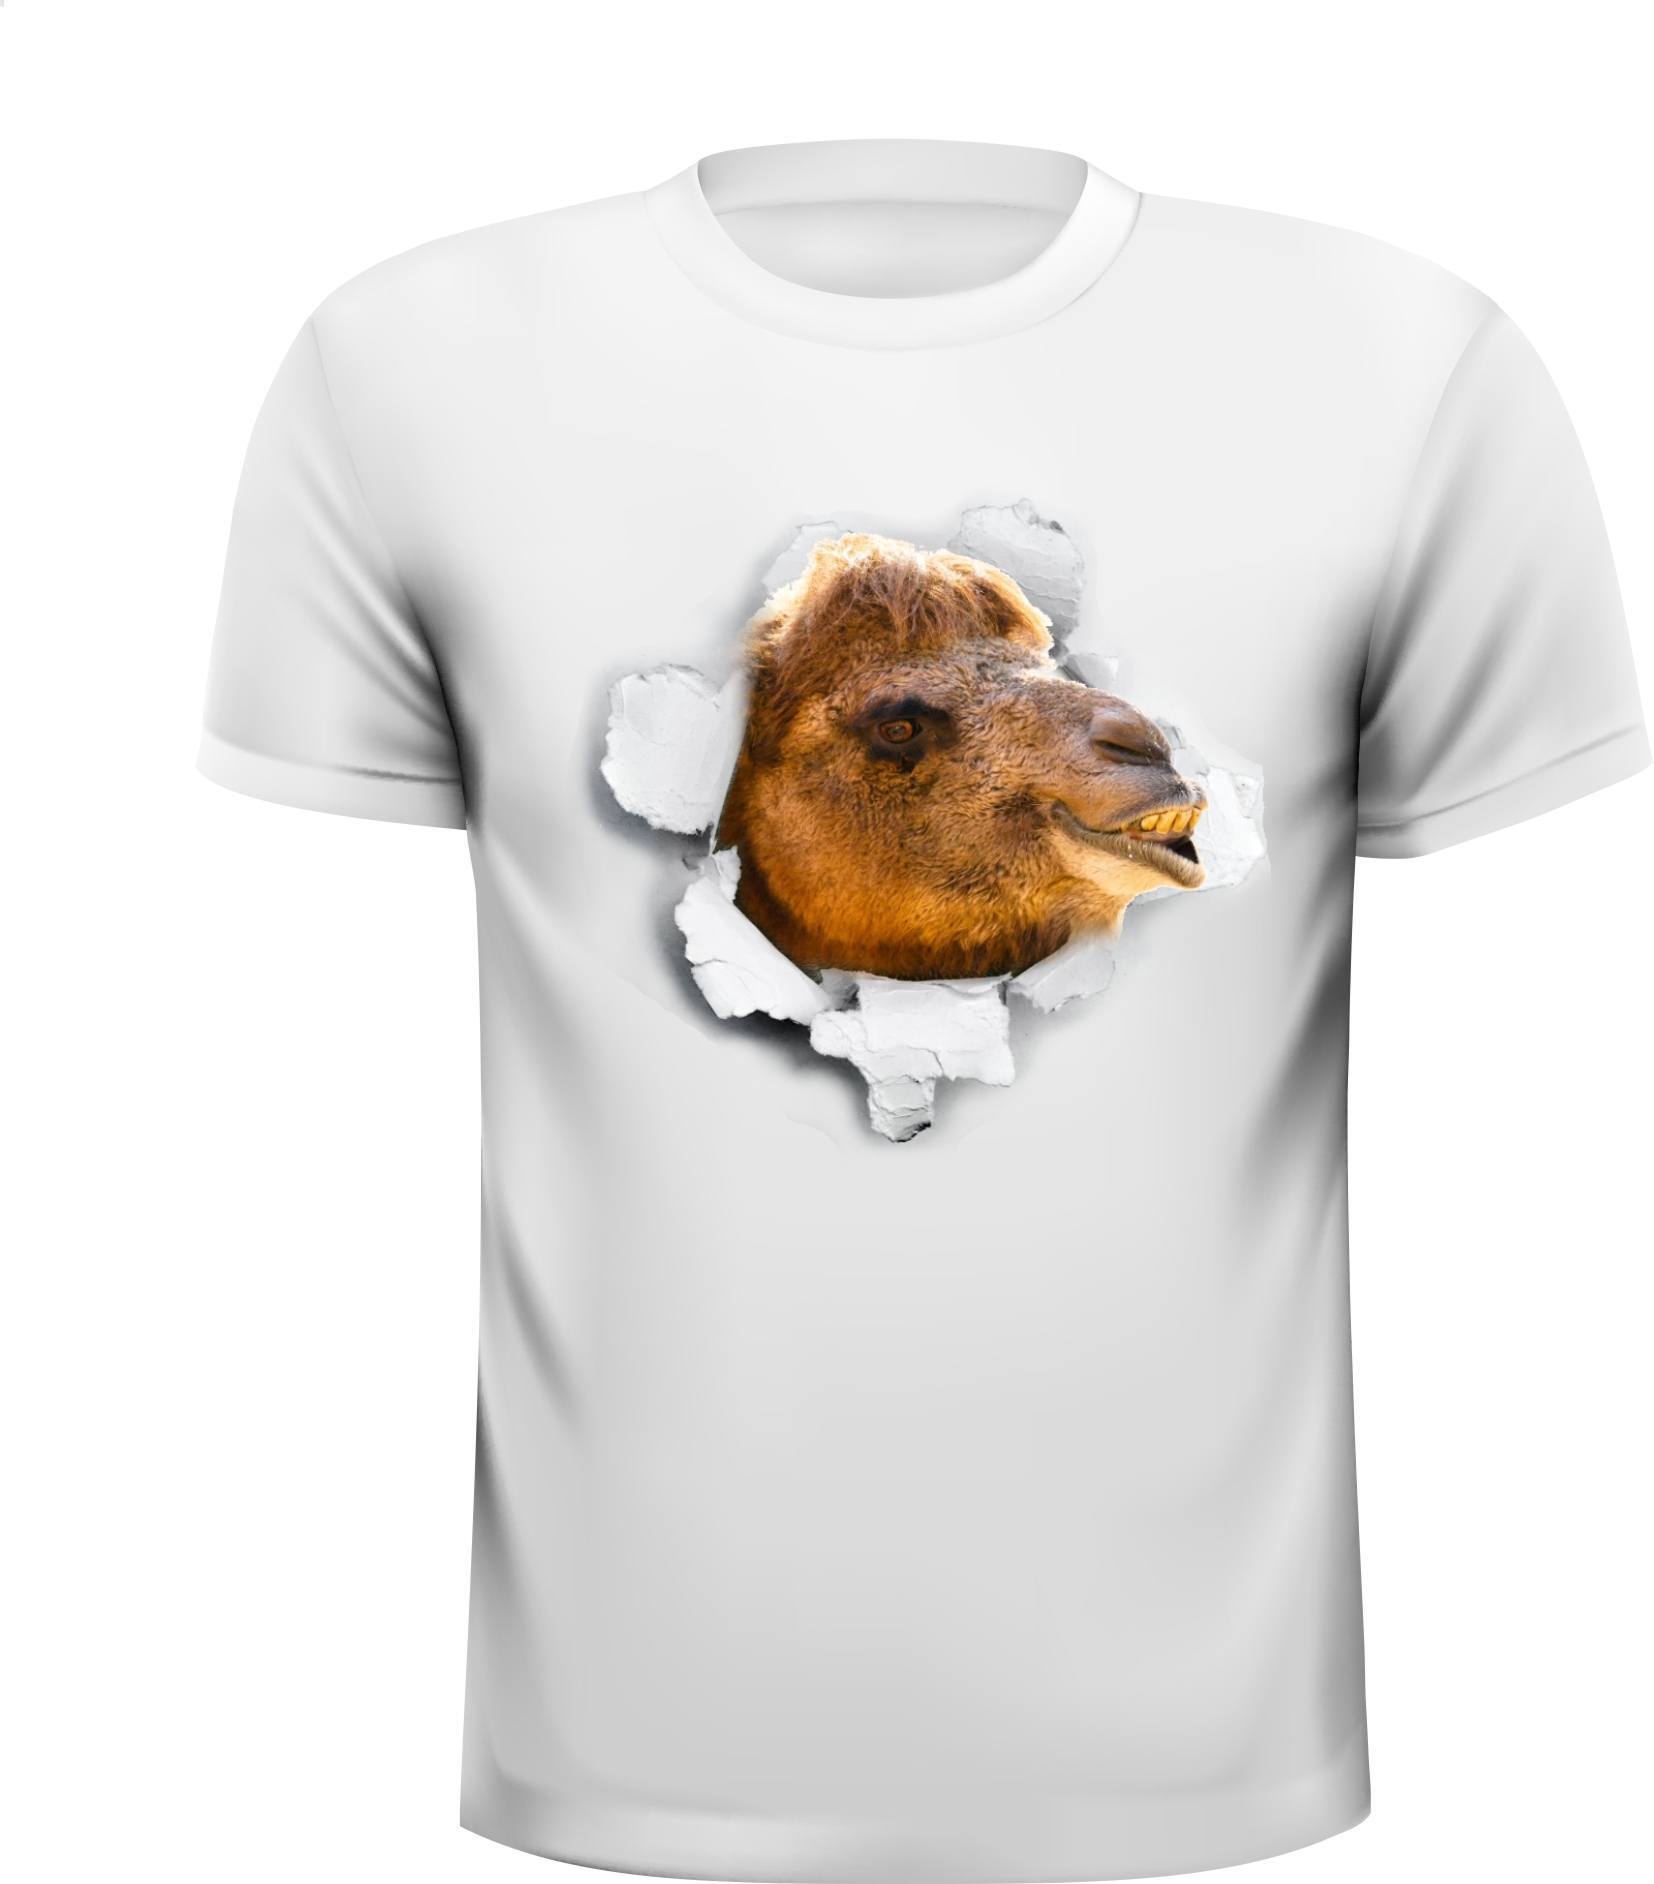 Kameel dromedaris kruipt uit  t-shirt met zijn kop